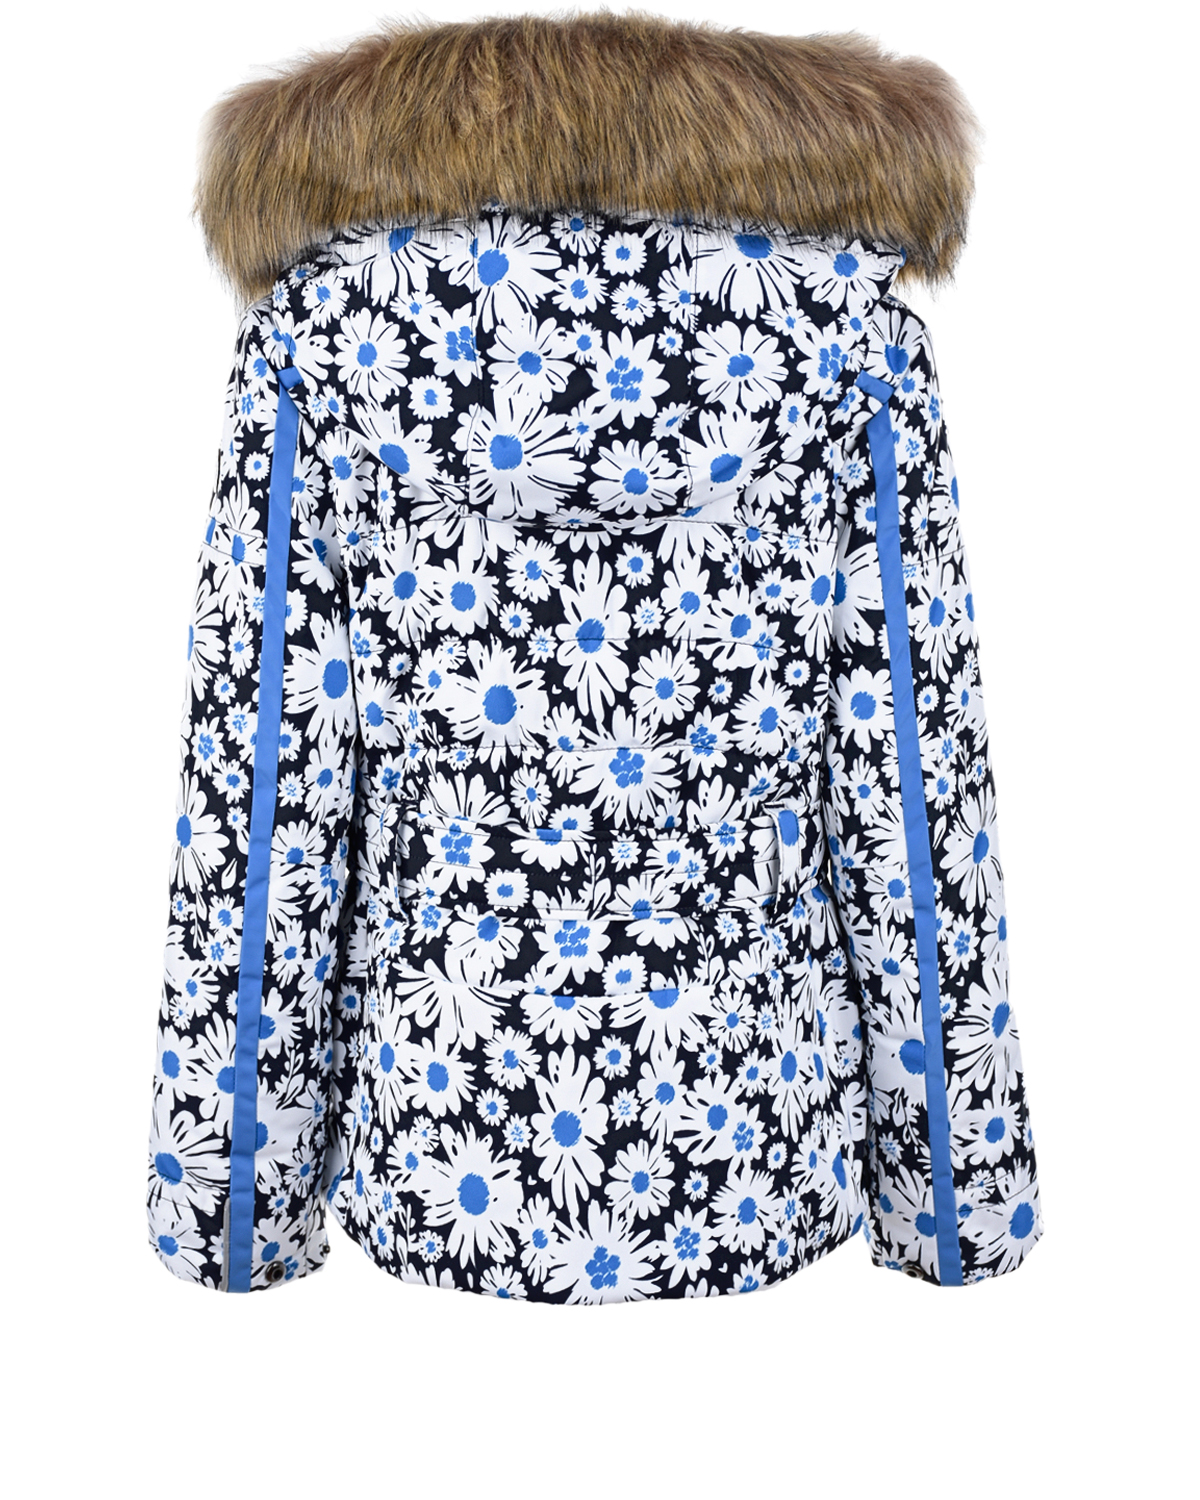 Куртка с принтом "ромашки" Poivre Blanc детская, размер 128, цвет синий - фото 2